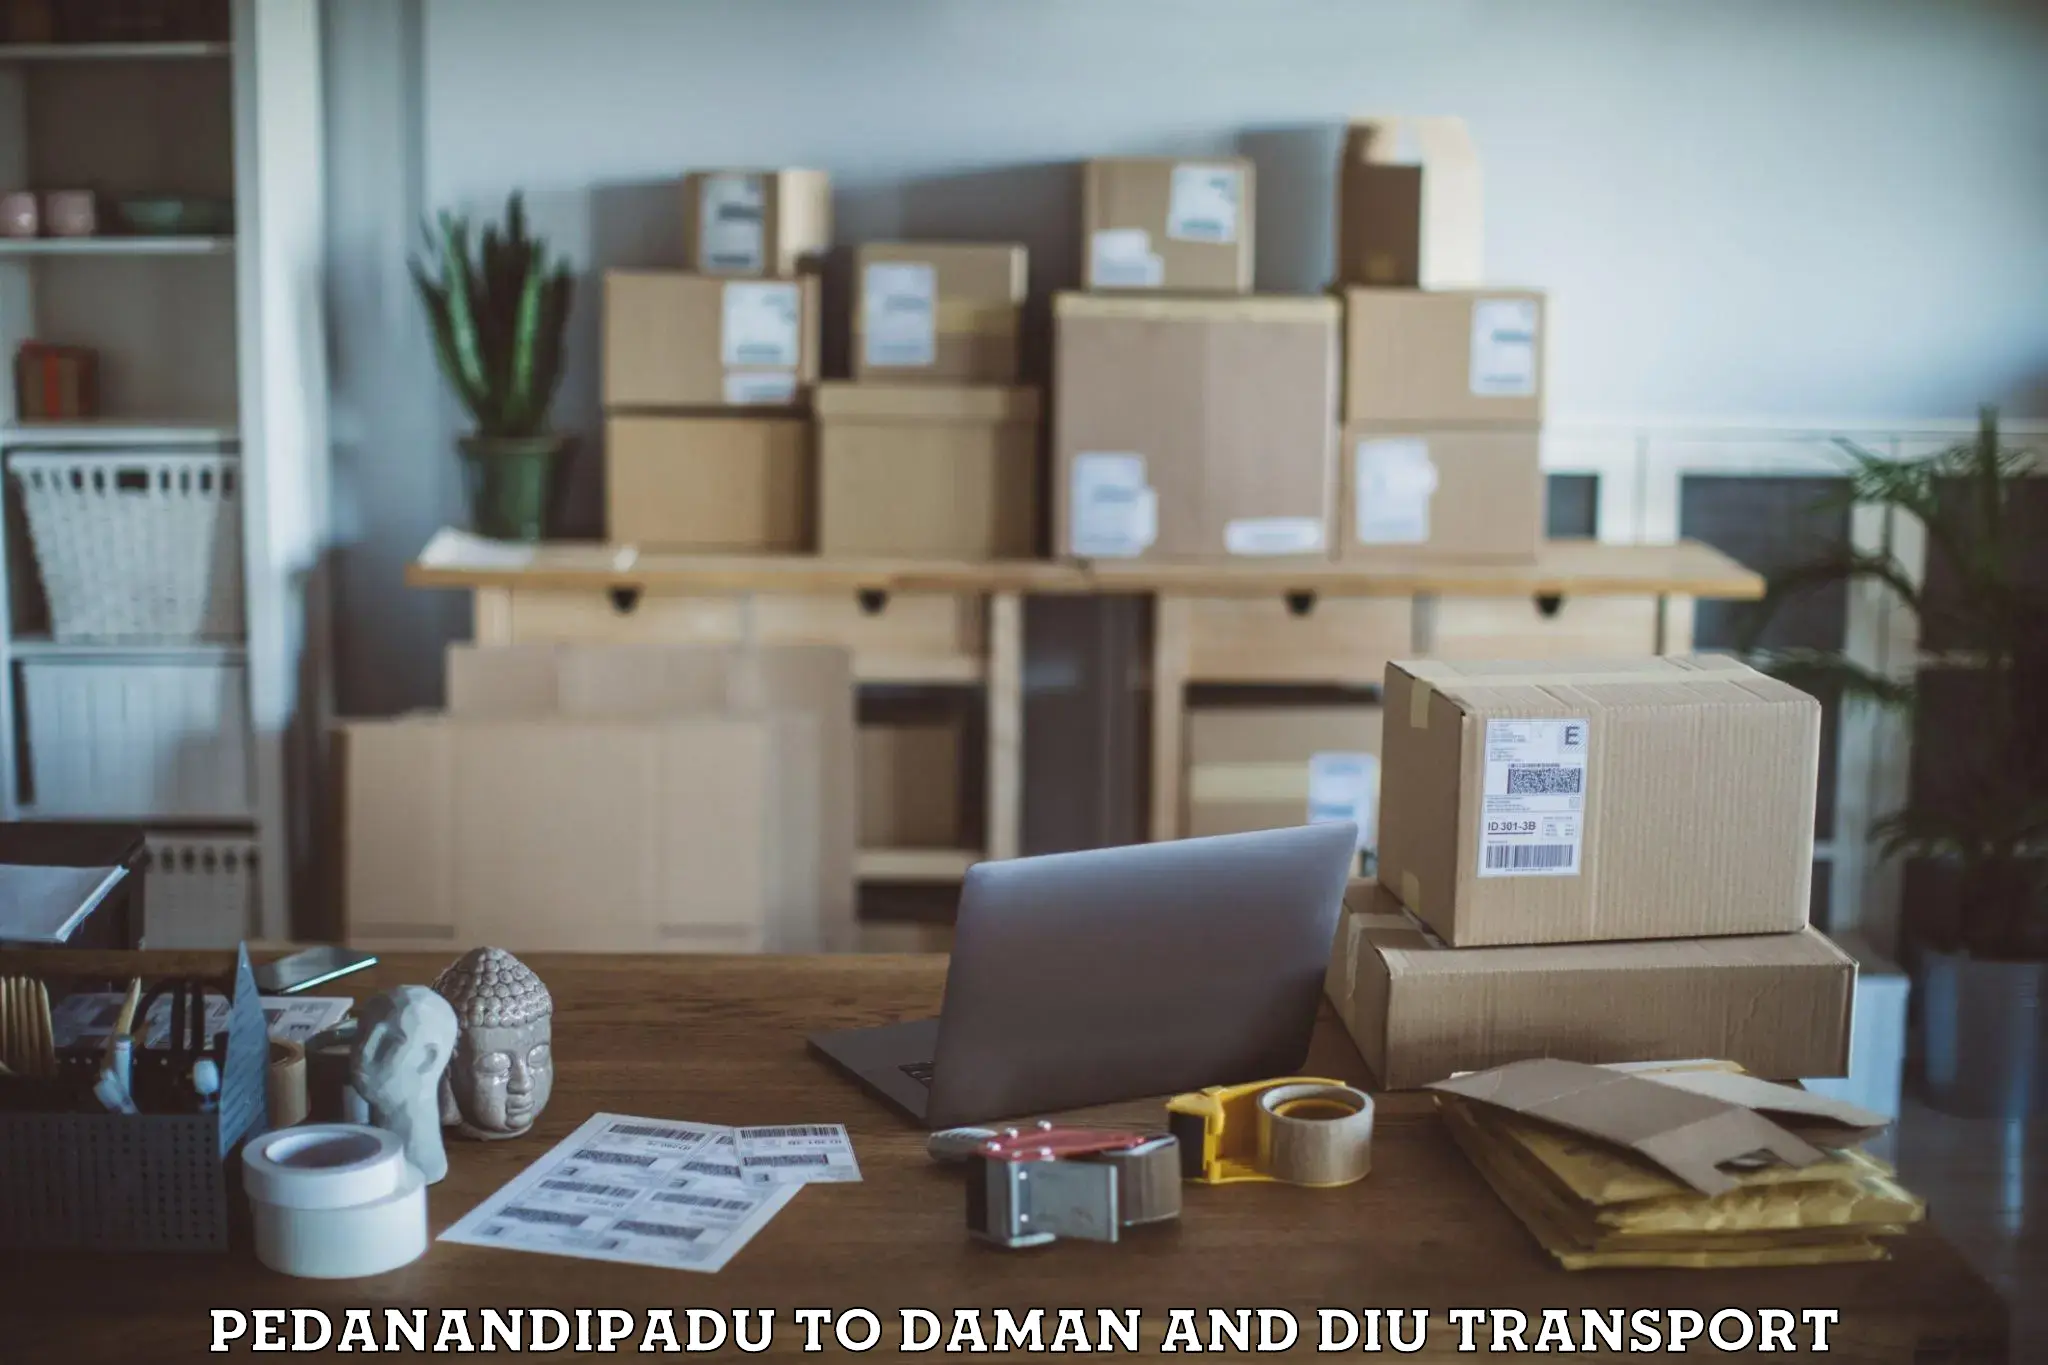 Pick up transport service Pedanandipadu to Daman and Diu